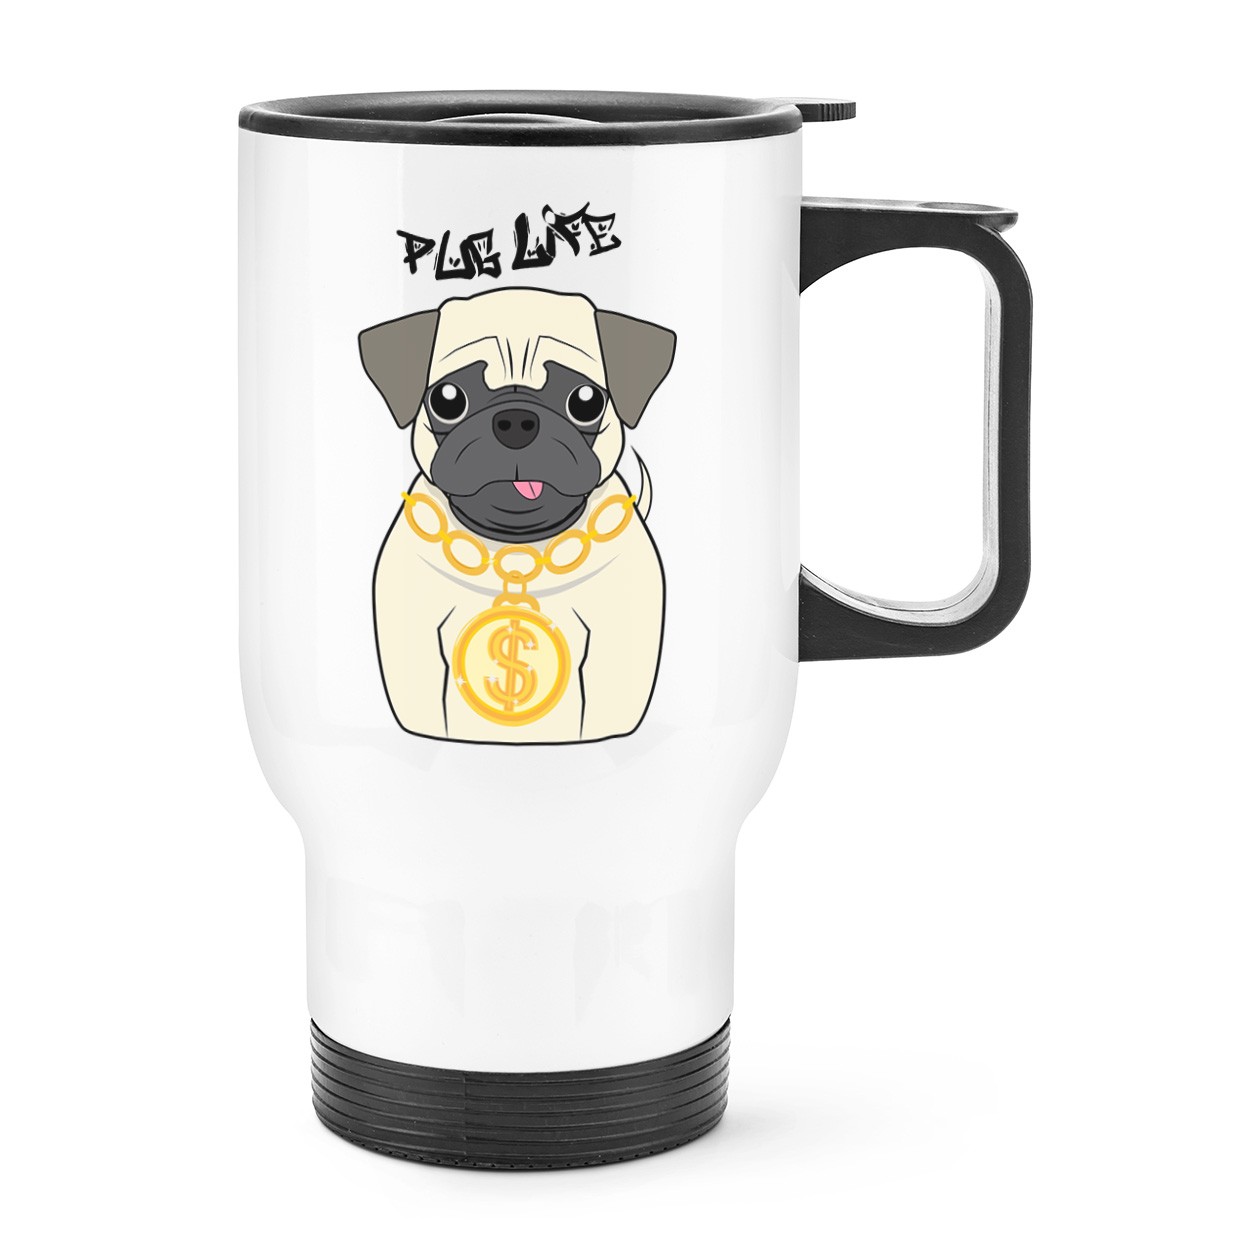 Pug Life Dog Travel Mug Cup With Handle